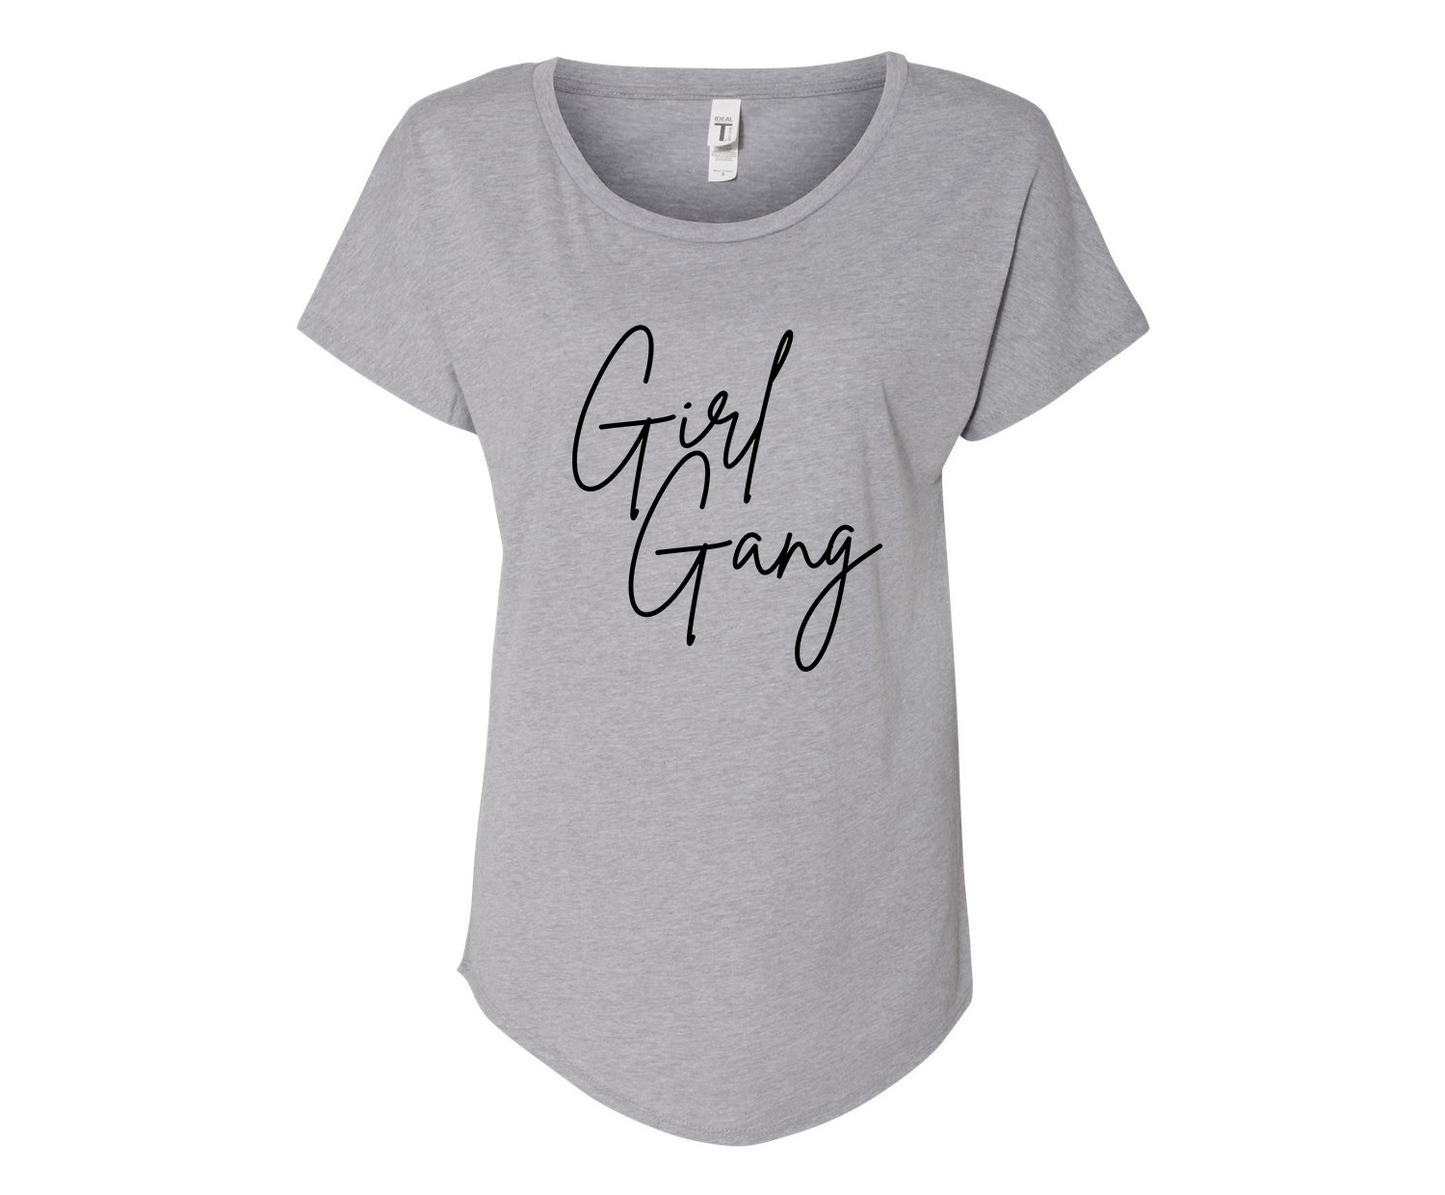 Girly Girl Gang Ladies Tee Shirt - In Grey & White